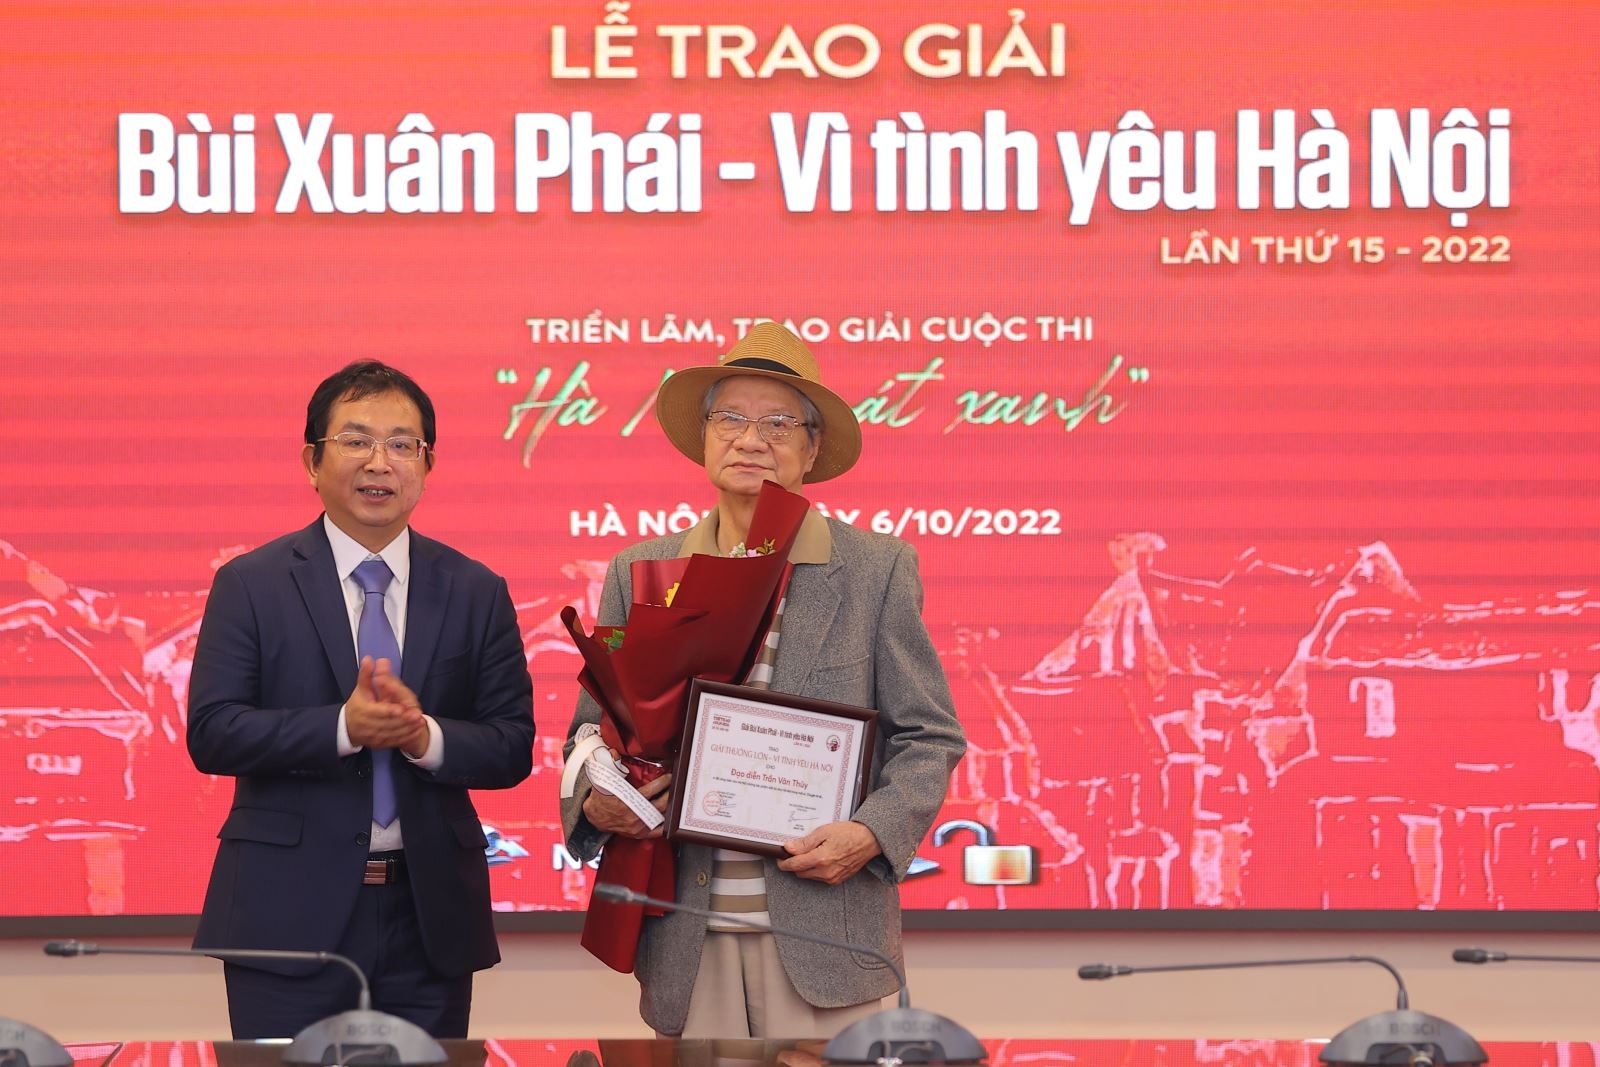 Đạo diễn Hà Nội trong mắt ai Trần Văn Thủy nhận Giải thưởng Lớn - 1